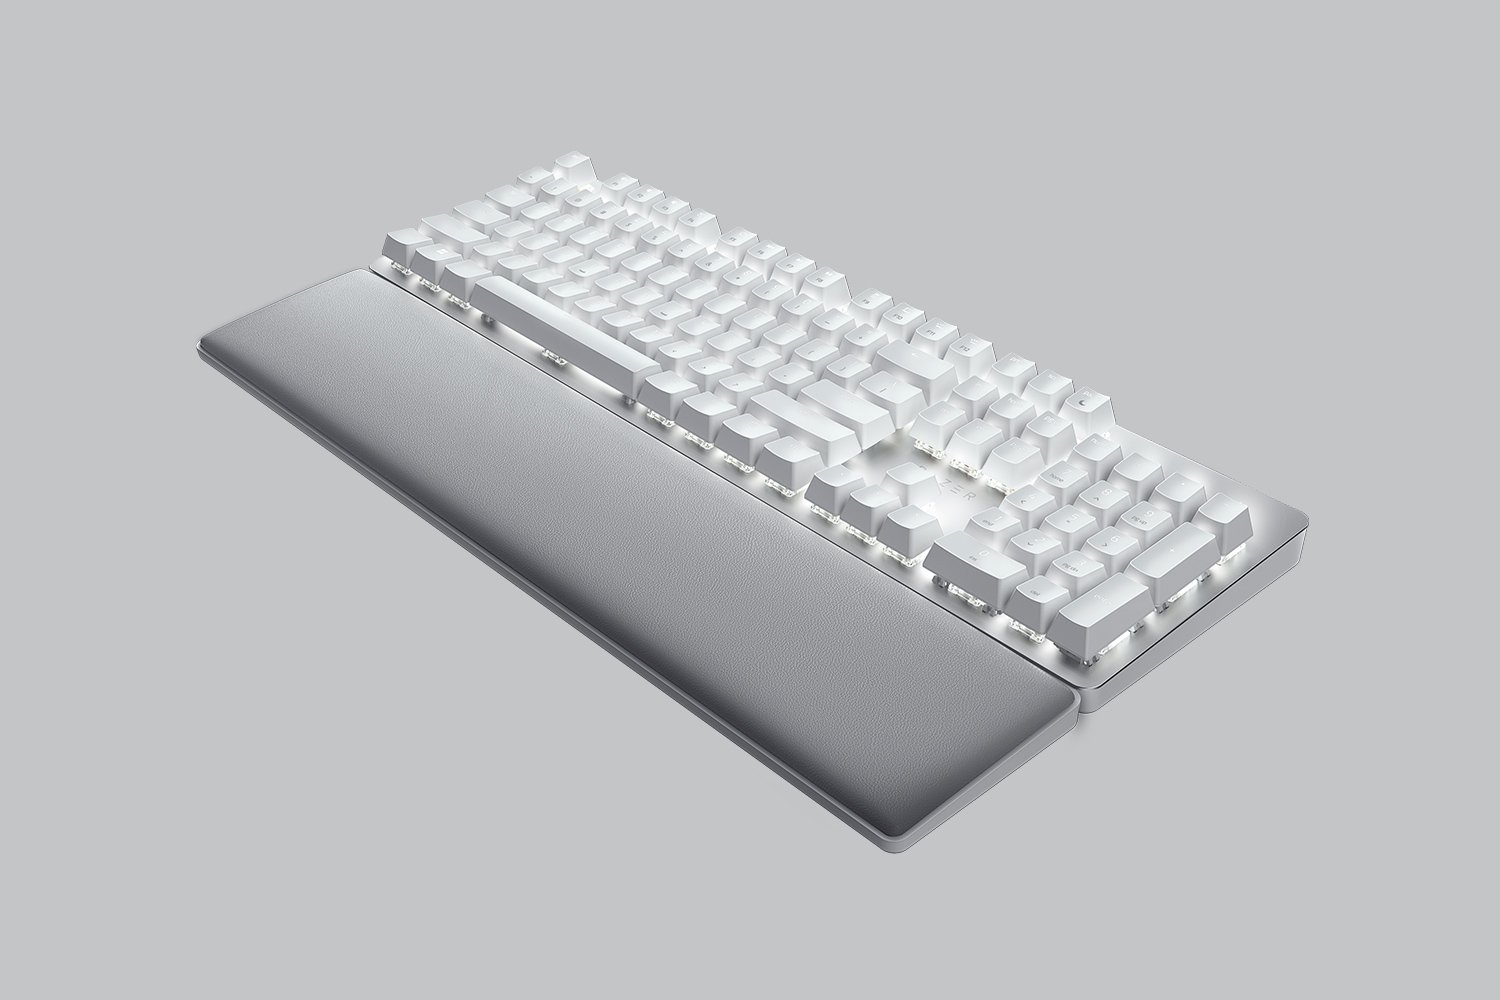 Razer aesthetic keyboard